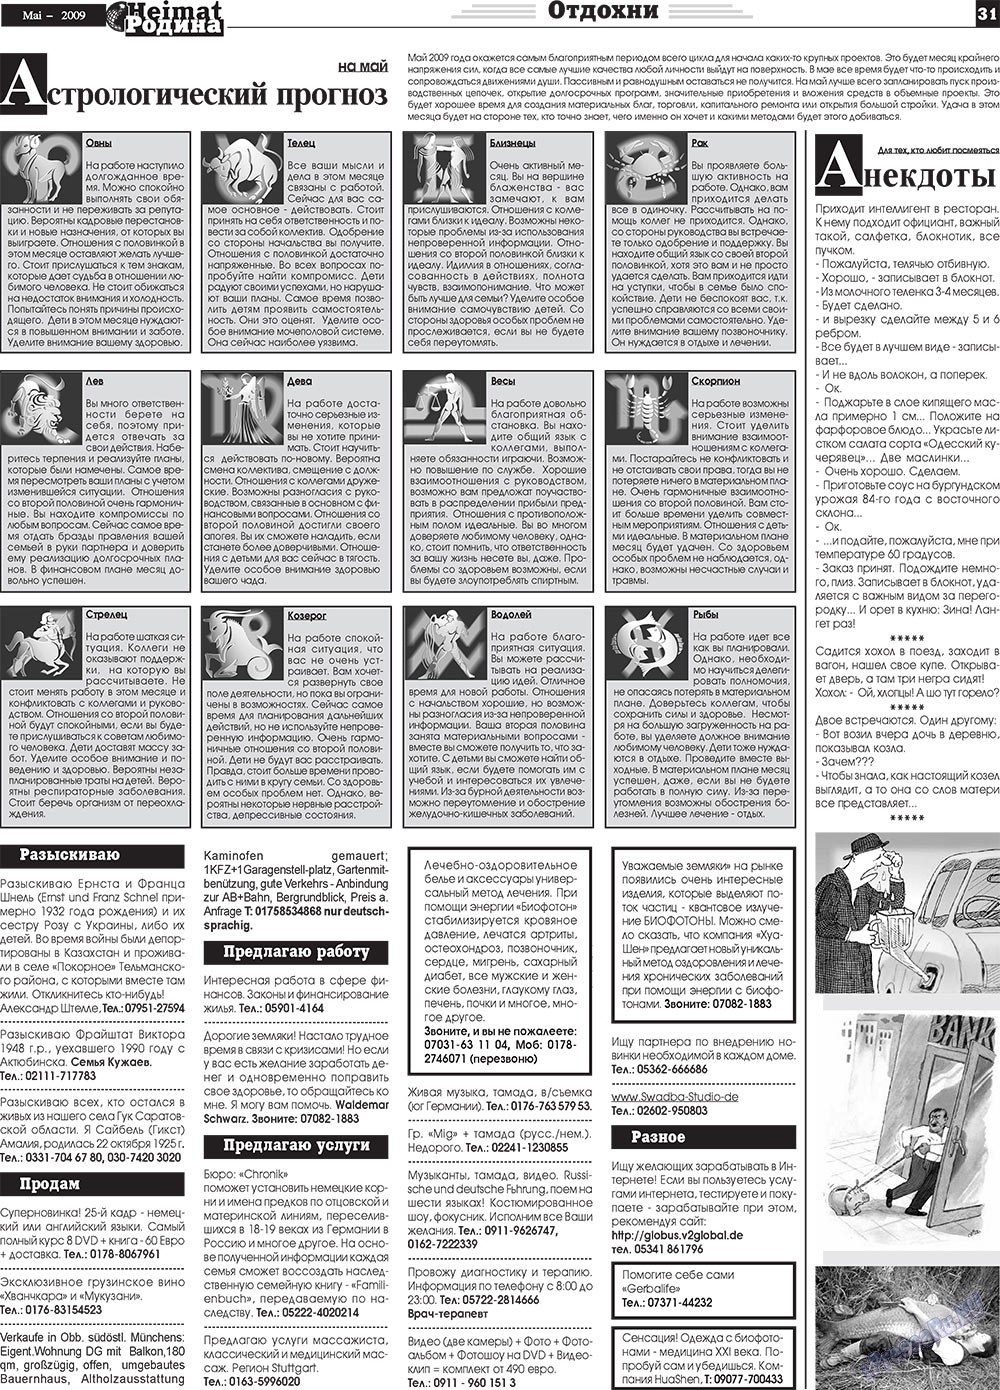 Heimat-Родина (газета). 2009 год, номер 5, стр. 31